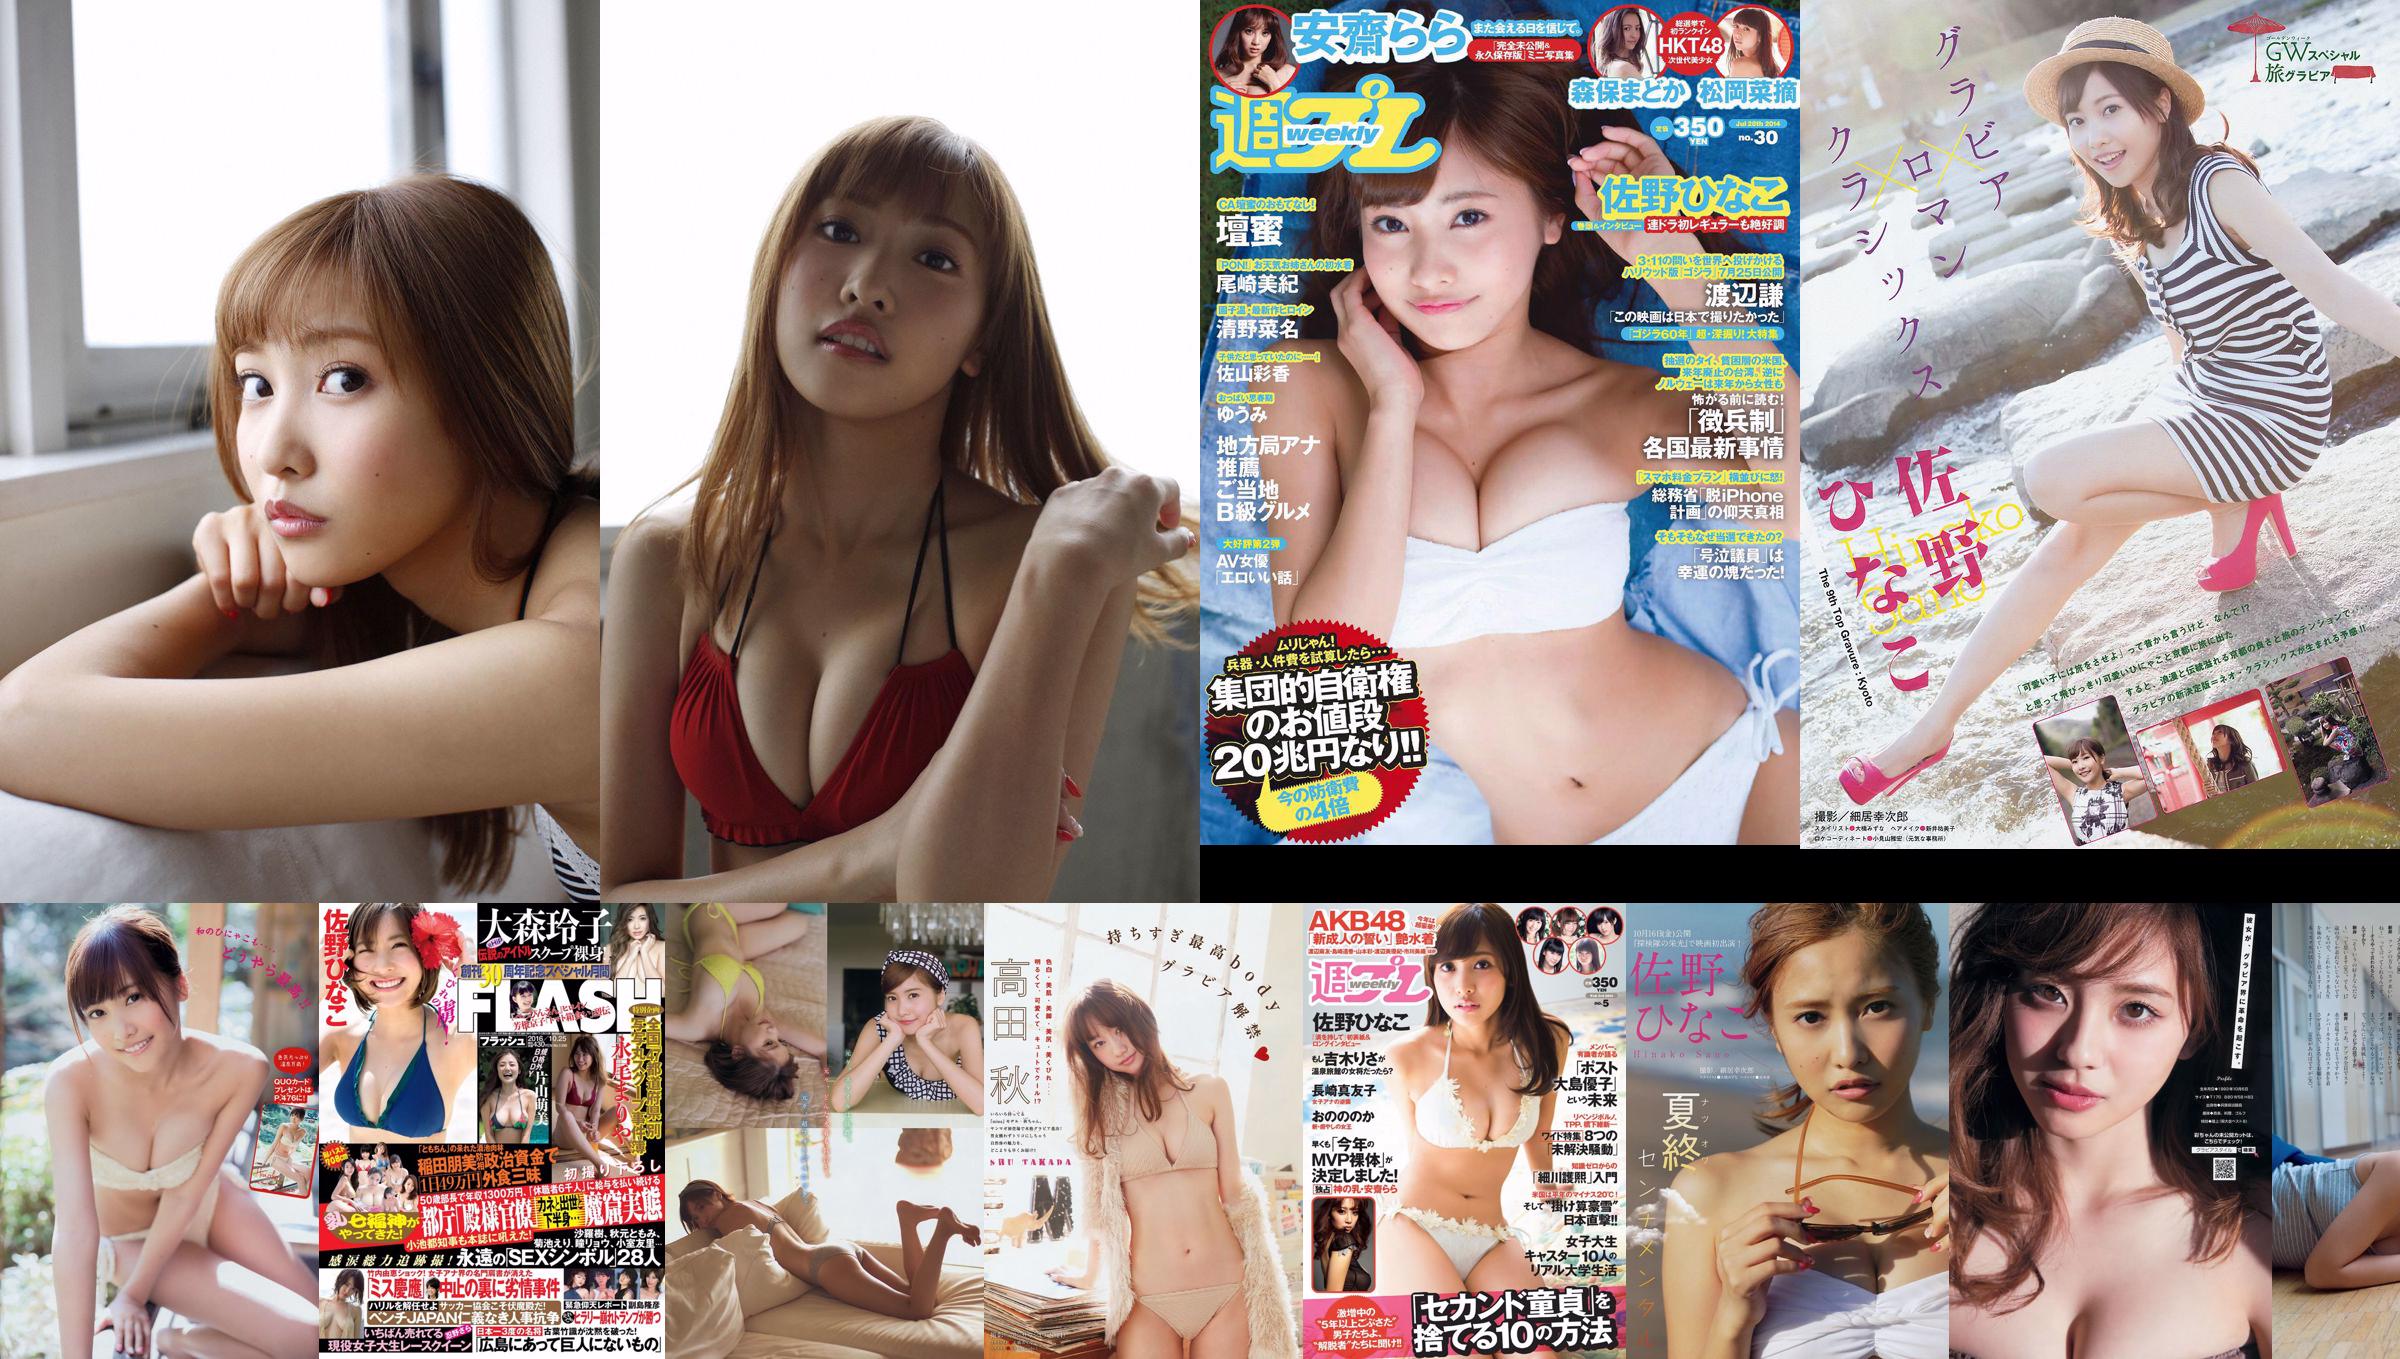 Hinako Sano Mayuko Nagasaki Nonoka Ono Arisa Yoshiki Risa [Weekly Playboy] 2014 No.05 Photograph No.66bf9c Page 1